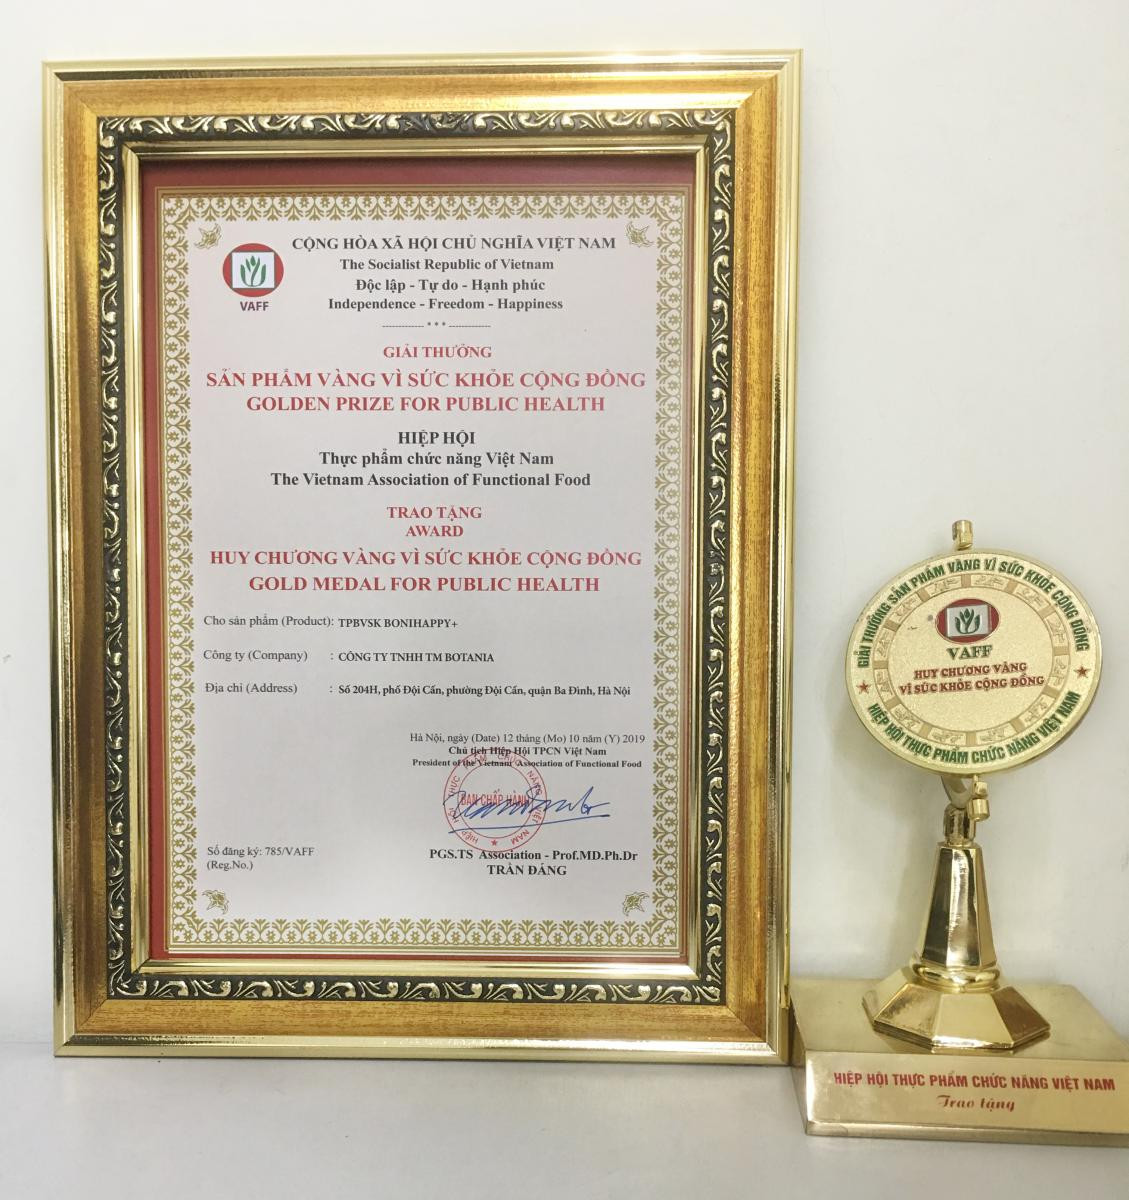 Cúp và giải thưởng “Huy chương vàng vì sức khỏe cộng đồng” năm 2019